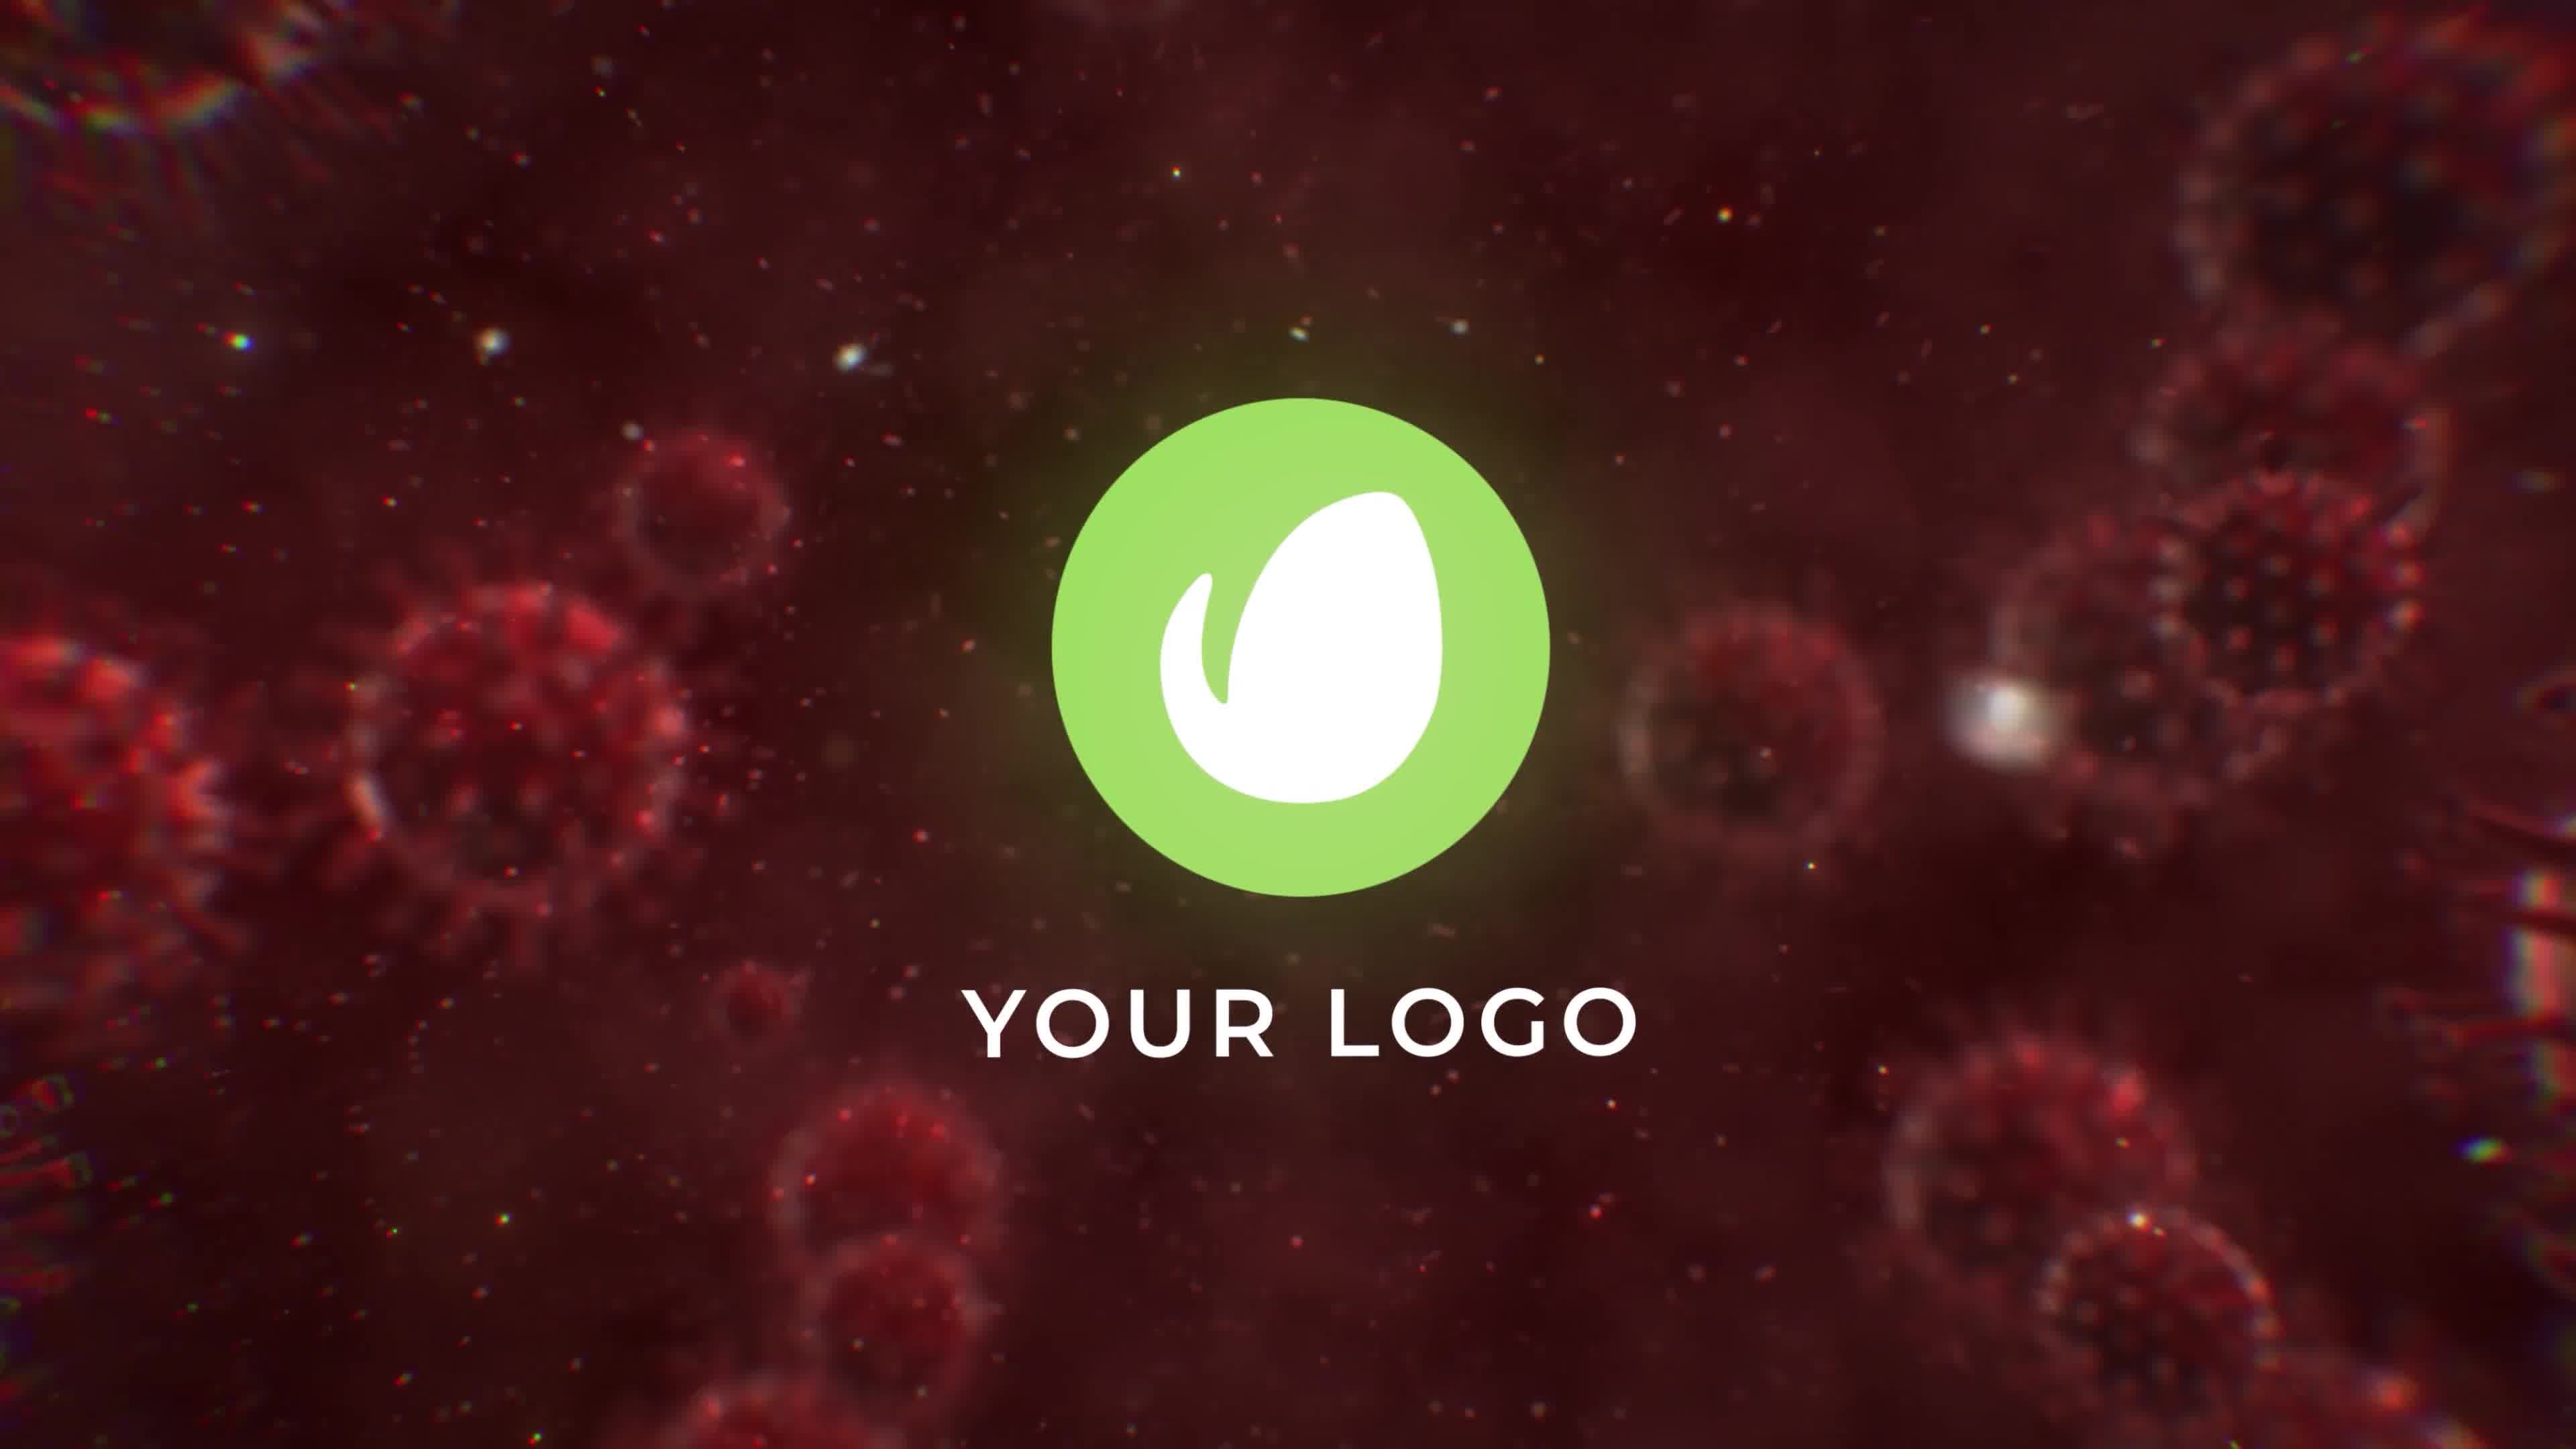 Virus Destruction Logo Reveal Videohive 26328449 Premiere Pro Image 9